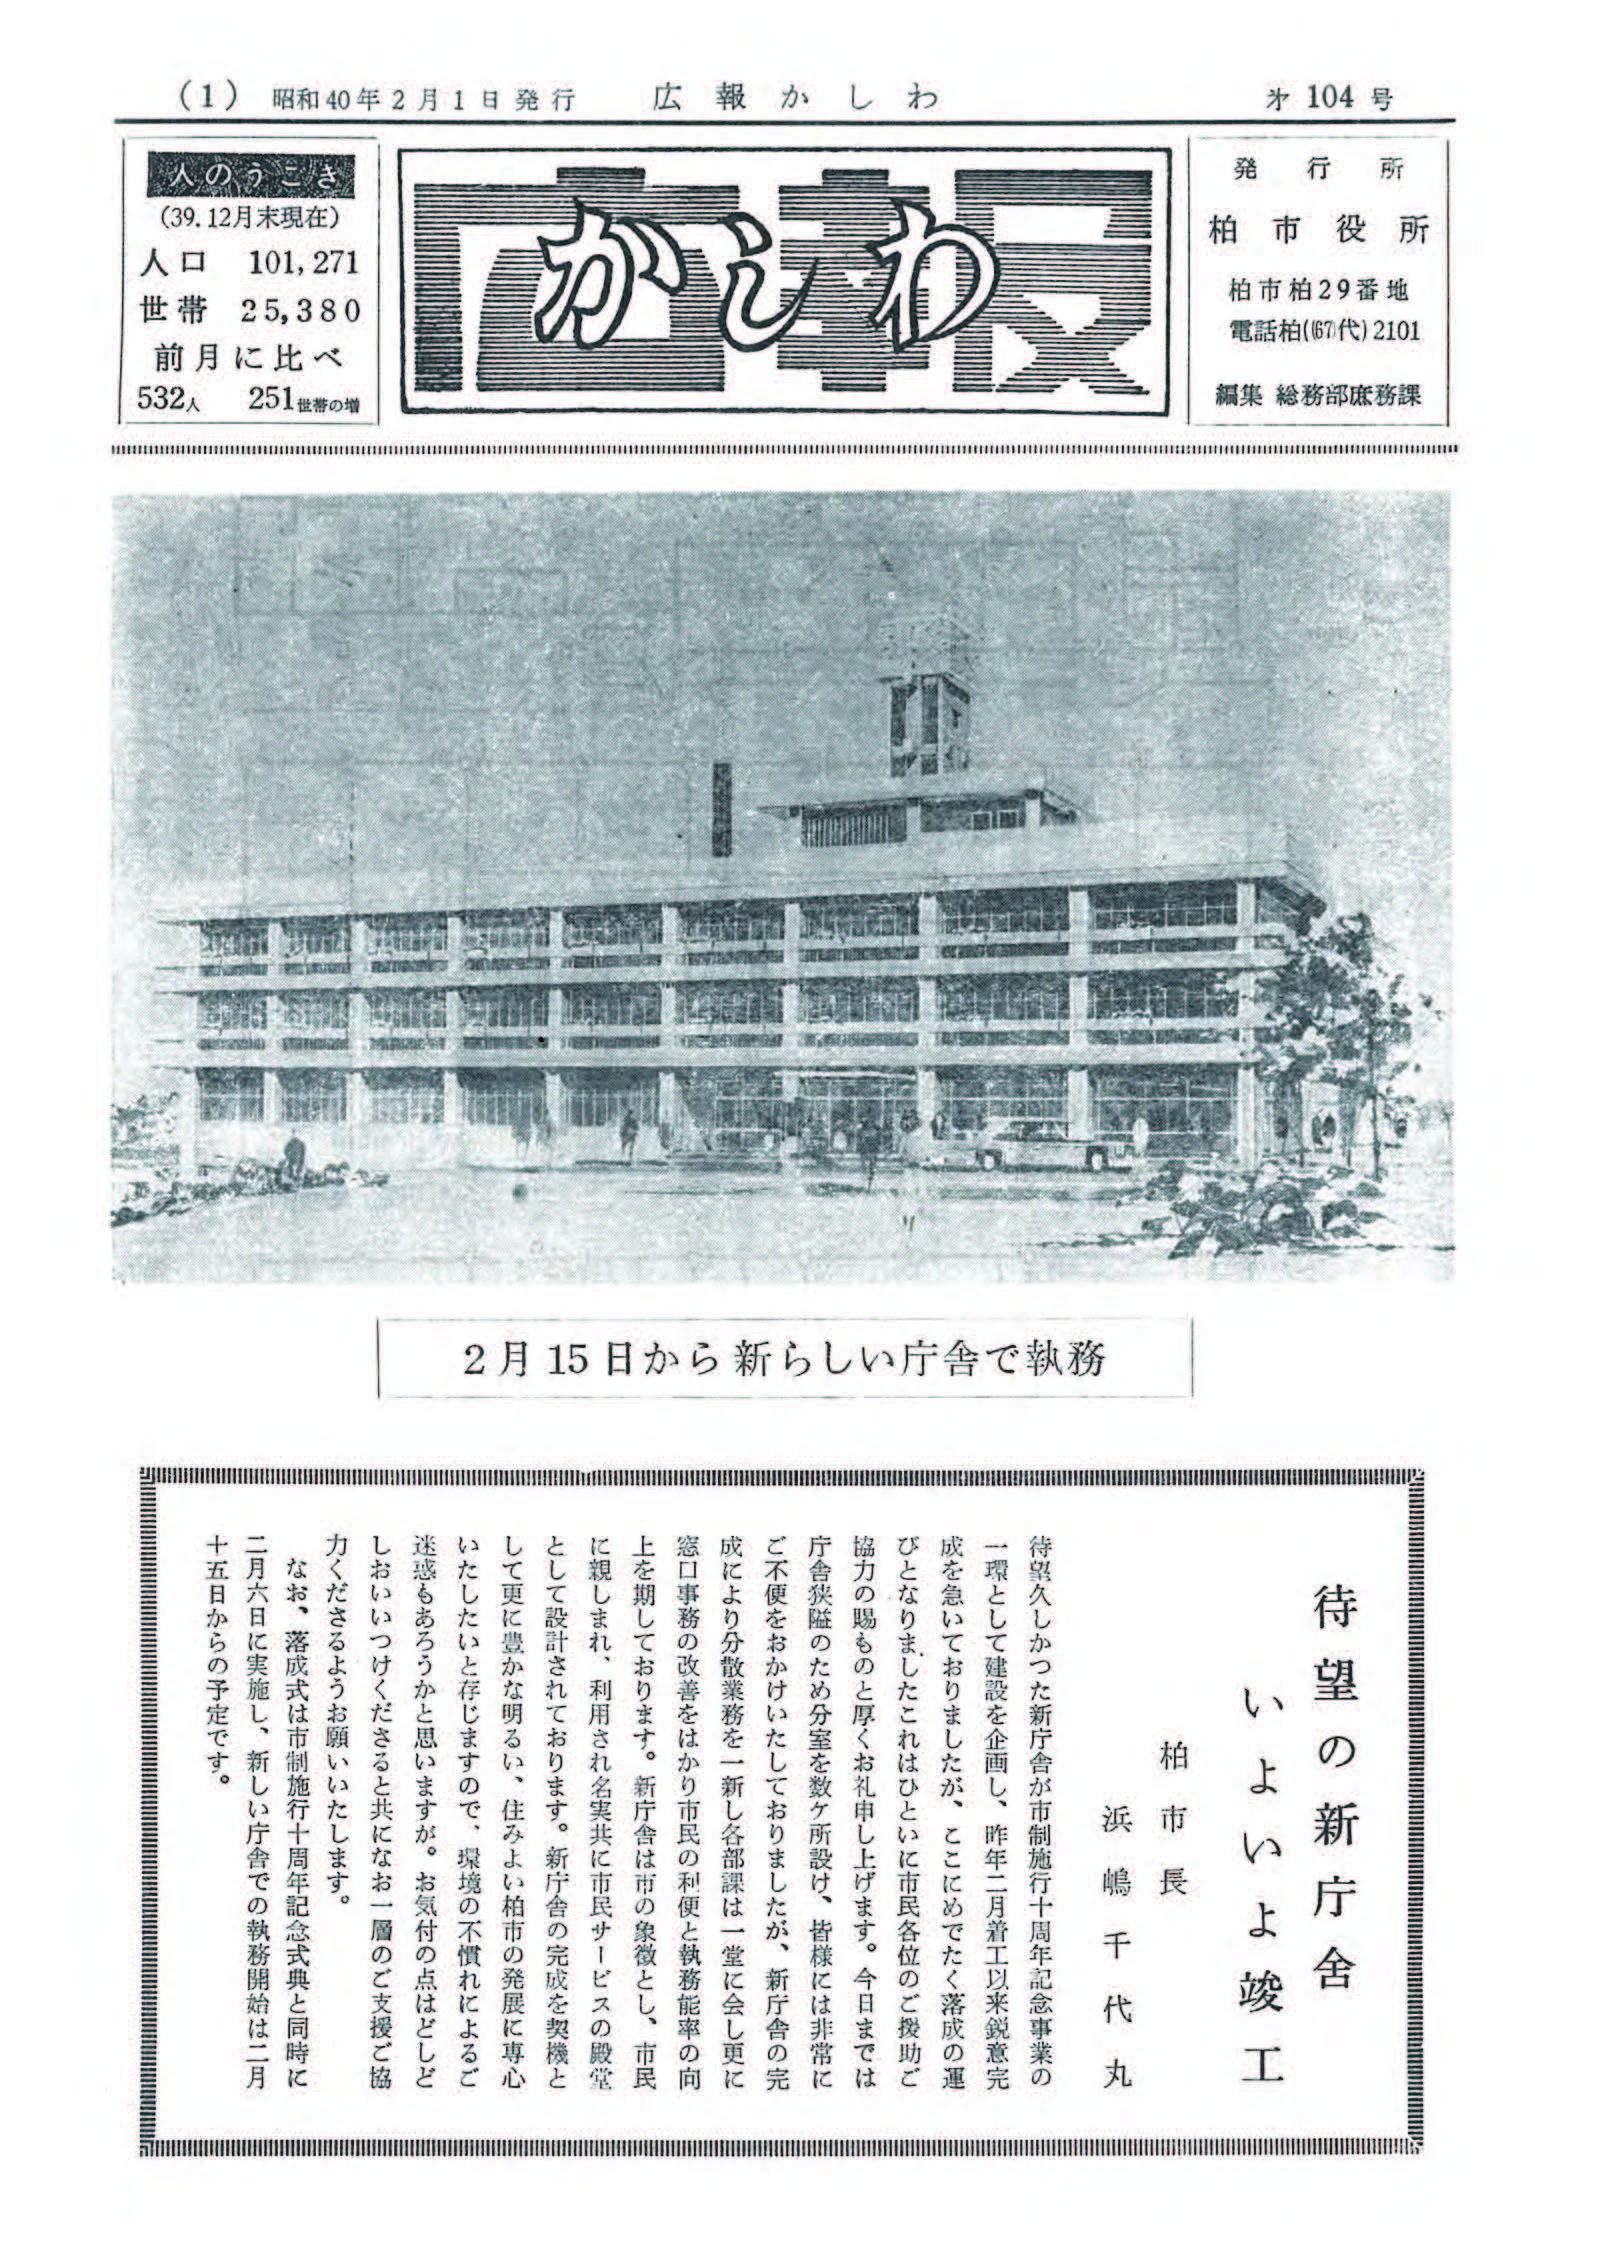 広報かしわ　昭和40年2月1日発行　104号